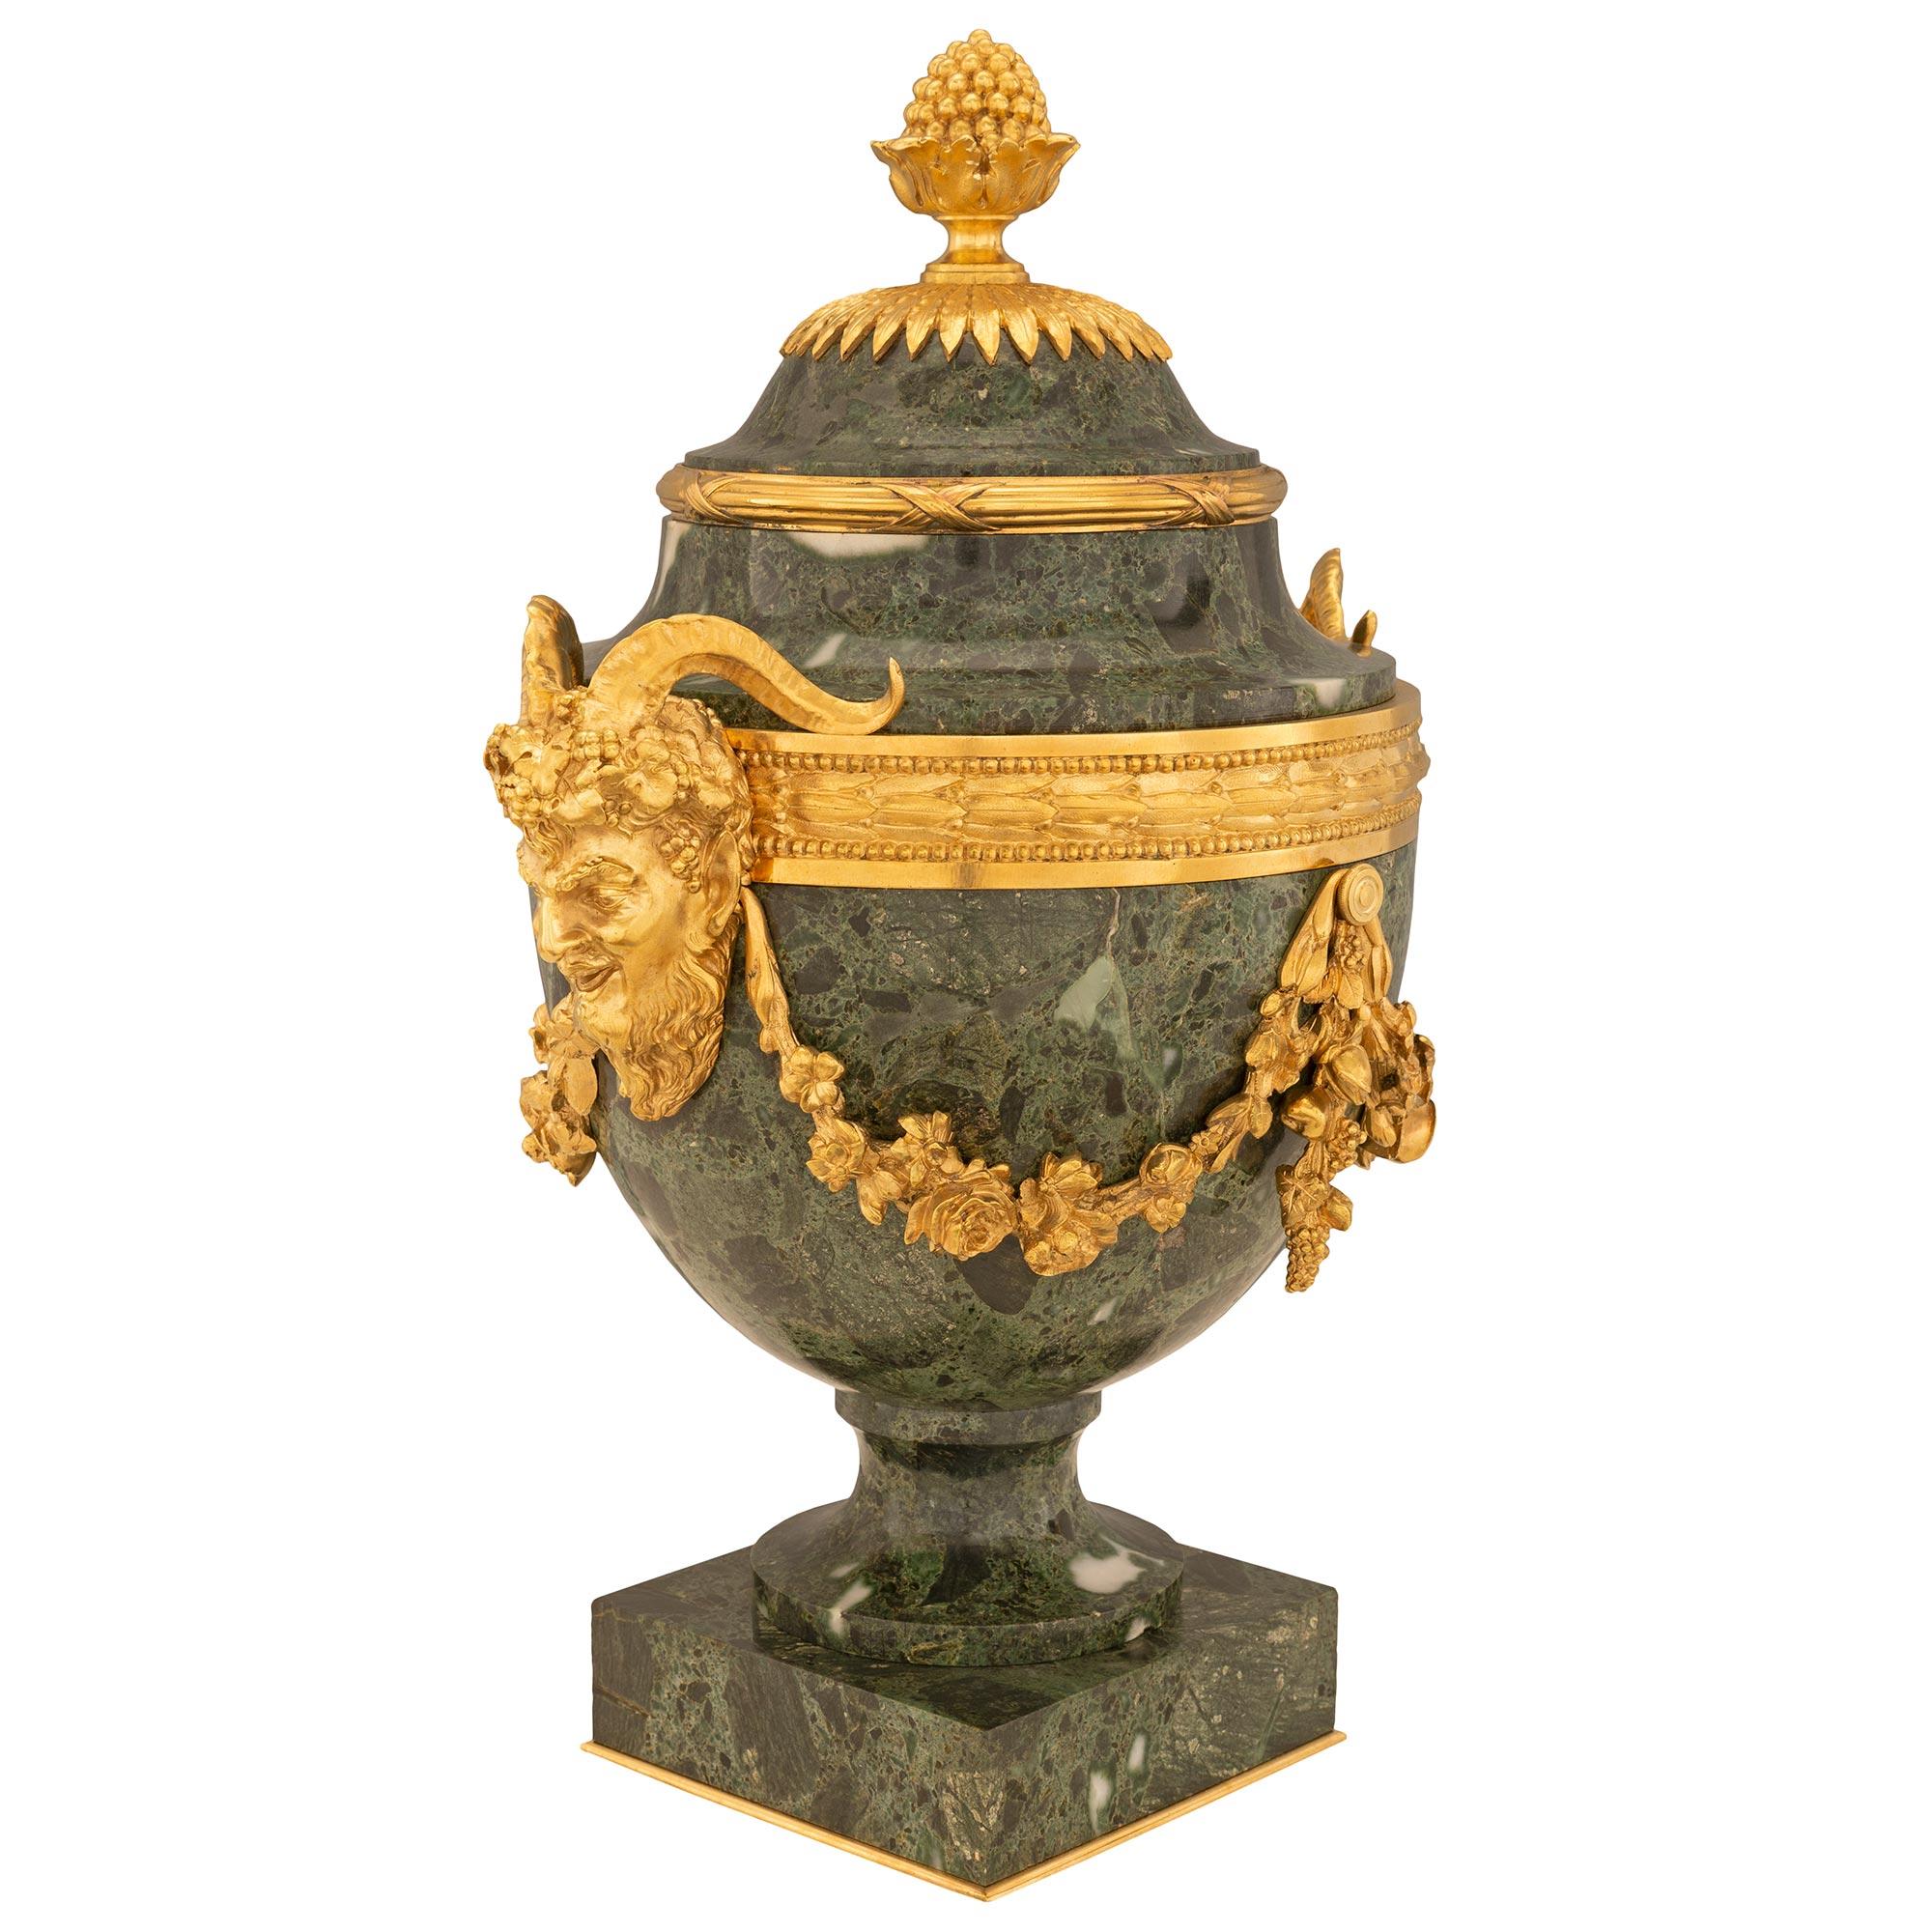 Ein auffälliges und hochwertiges Paar französischer Urnen aus dem 19. Jahrhundert, Louis XVI st. Belle Époque Periode Vertique Antique aus Marmor und Ormolu. Jede Urne steht auf einem quadratischen Marmorsockel mit einer feinen Ormolu-Bordüre unter